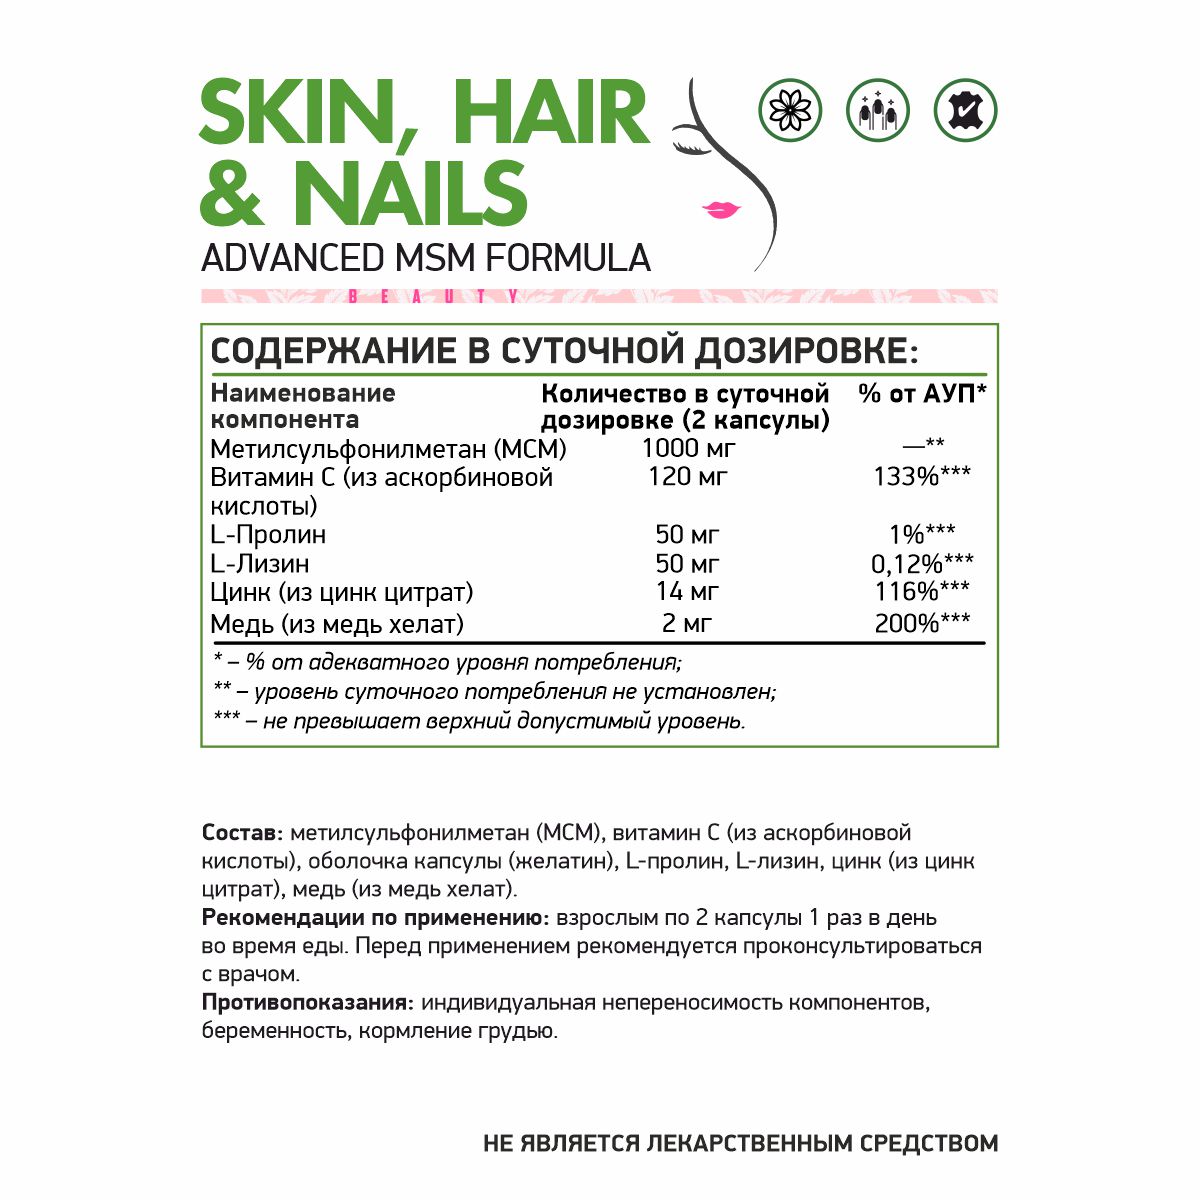 Natural Supp Skin hair nails (60 капс.)